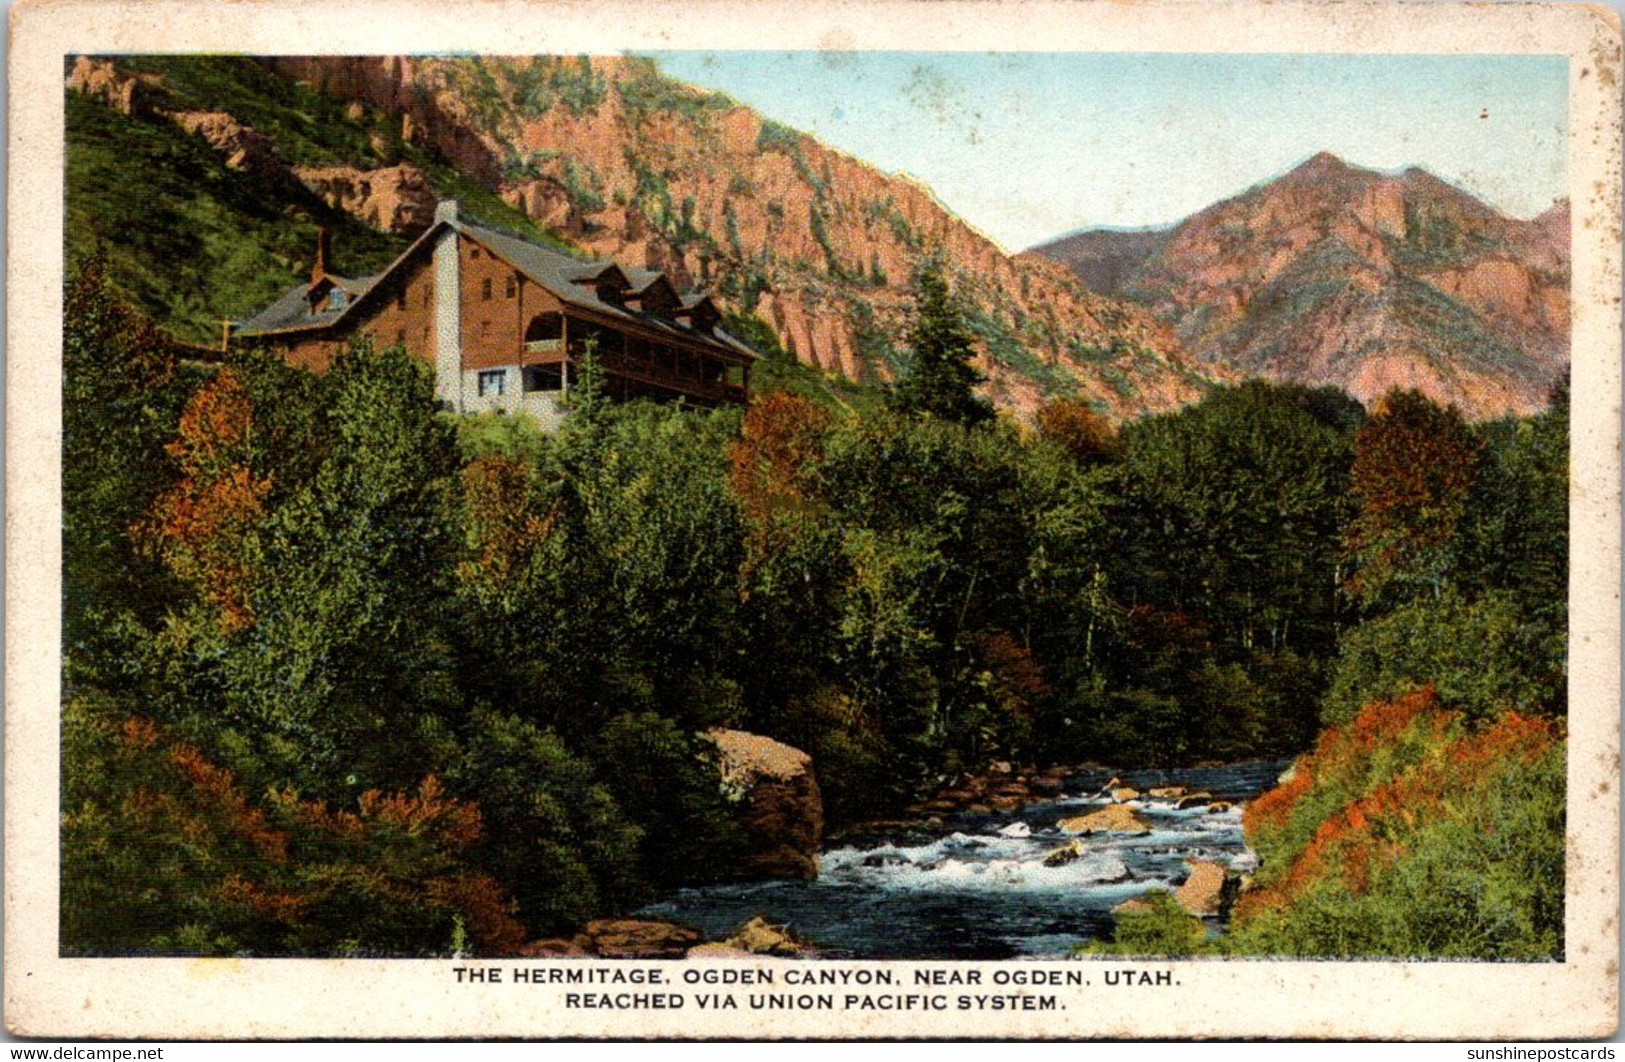 Utah Ogden Canyon The Hermitage - Ogden